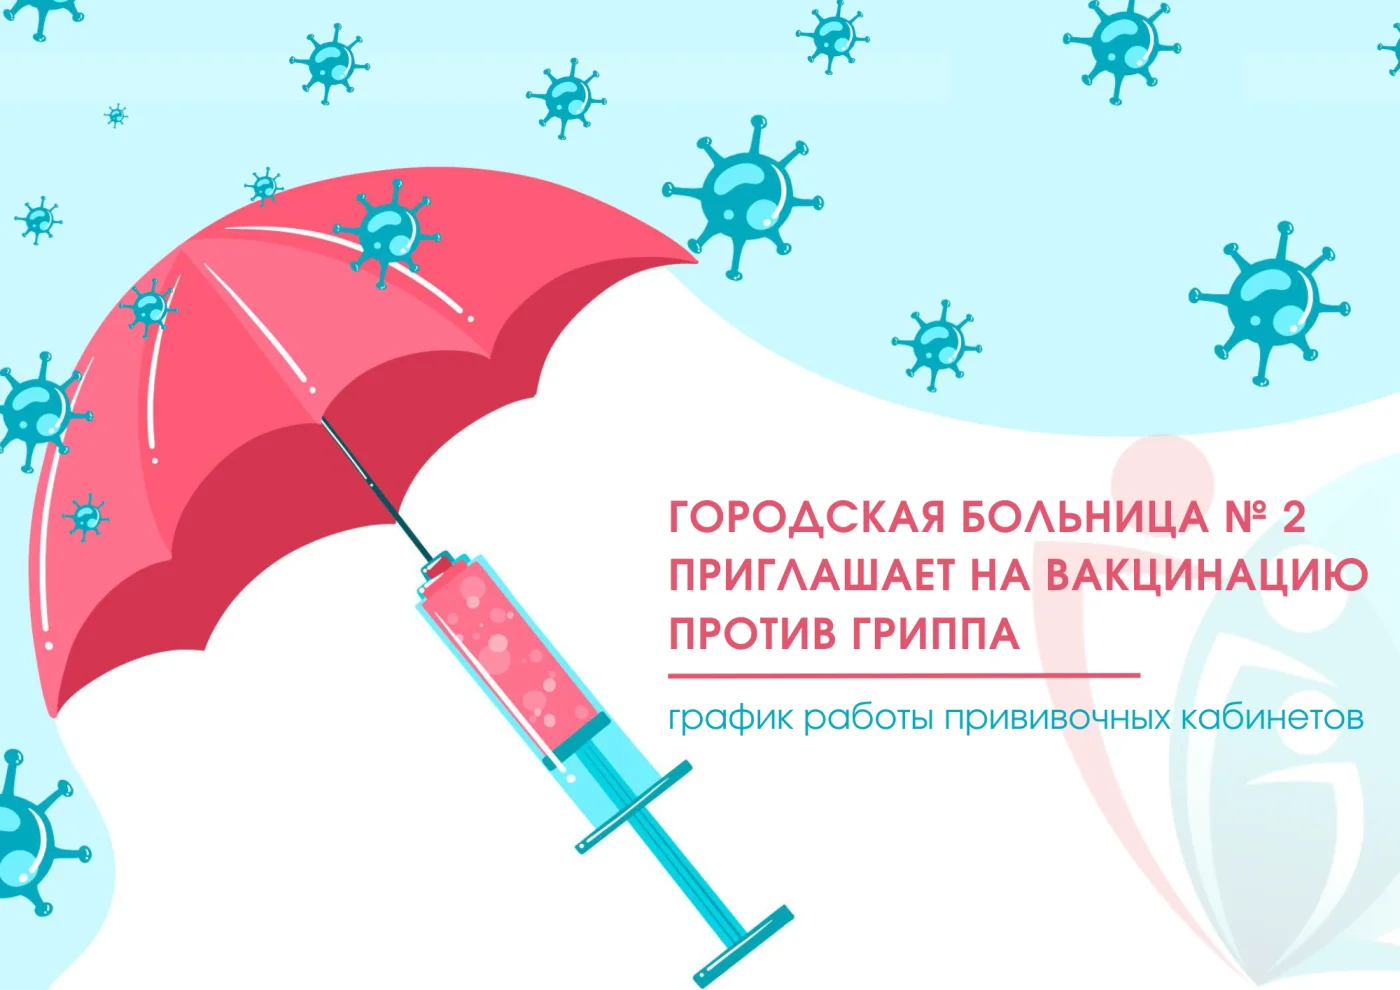 Городская больница № 2 приглашает на вакцинацию против гриппа